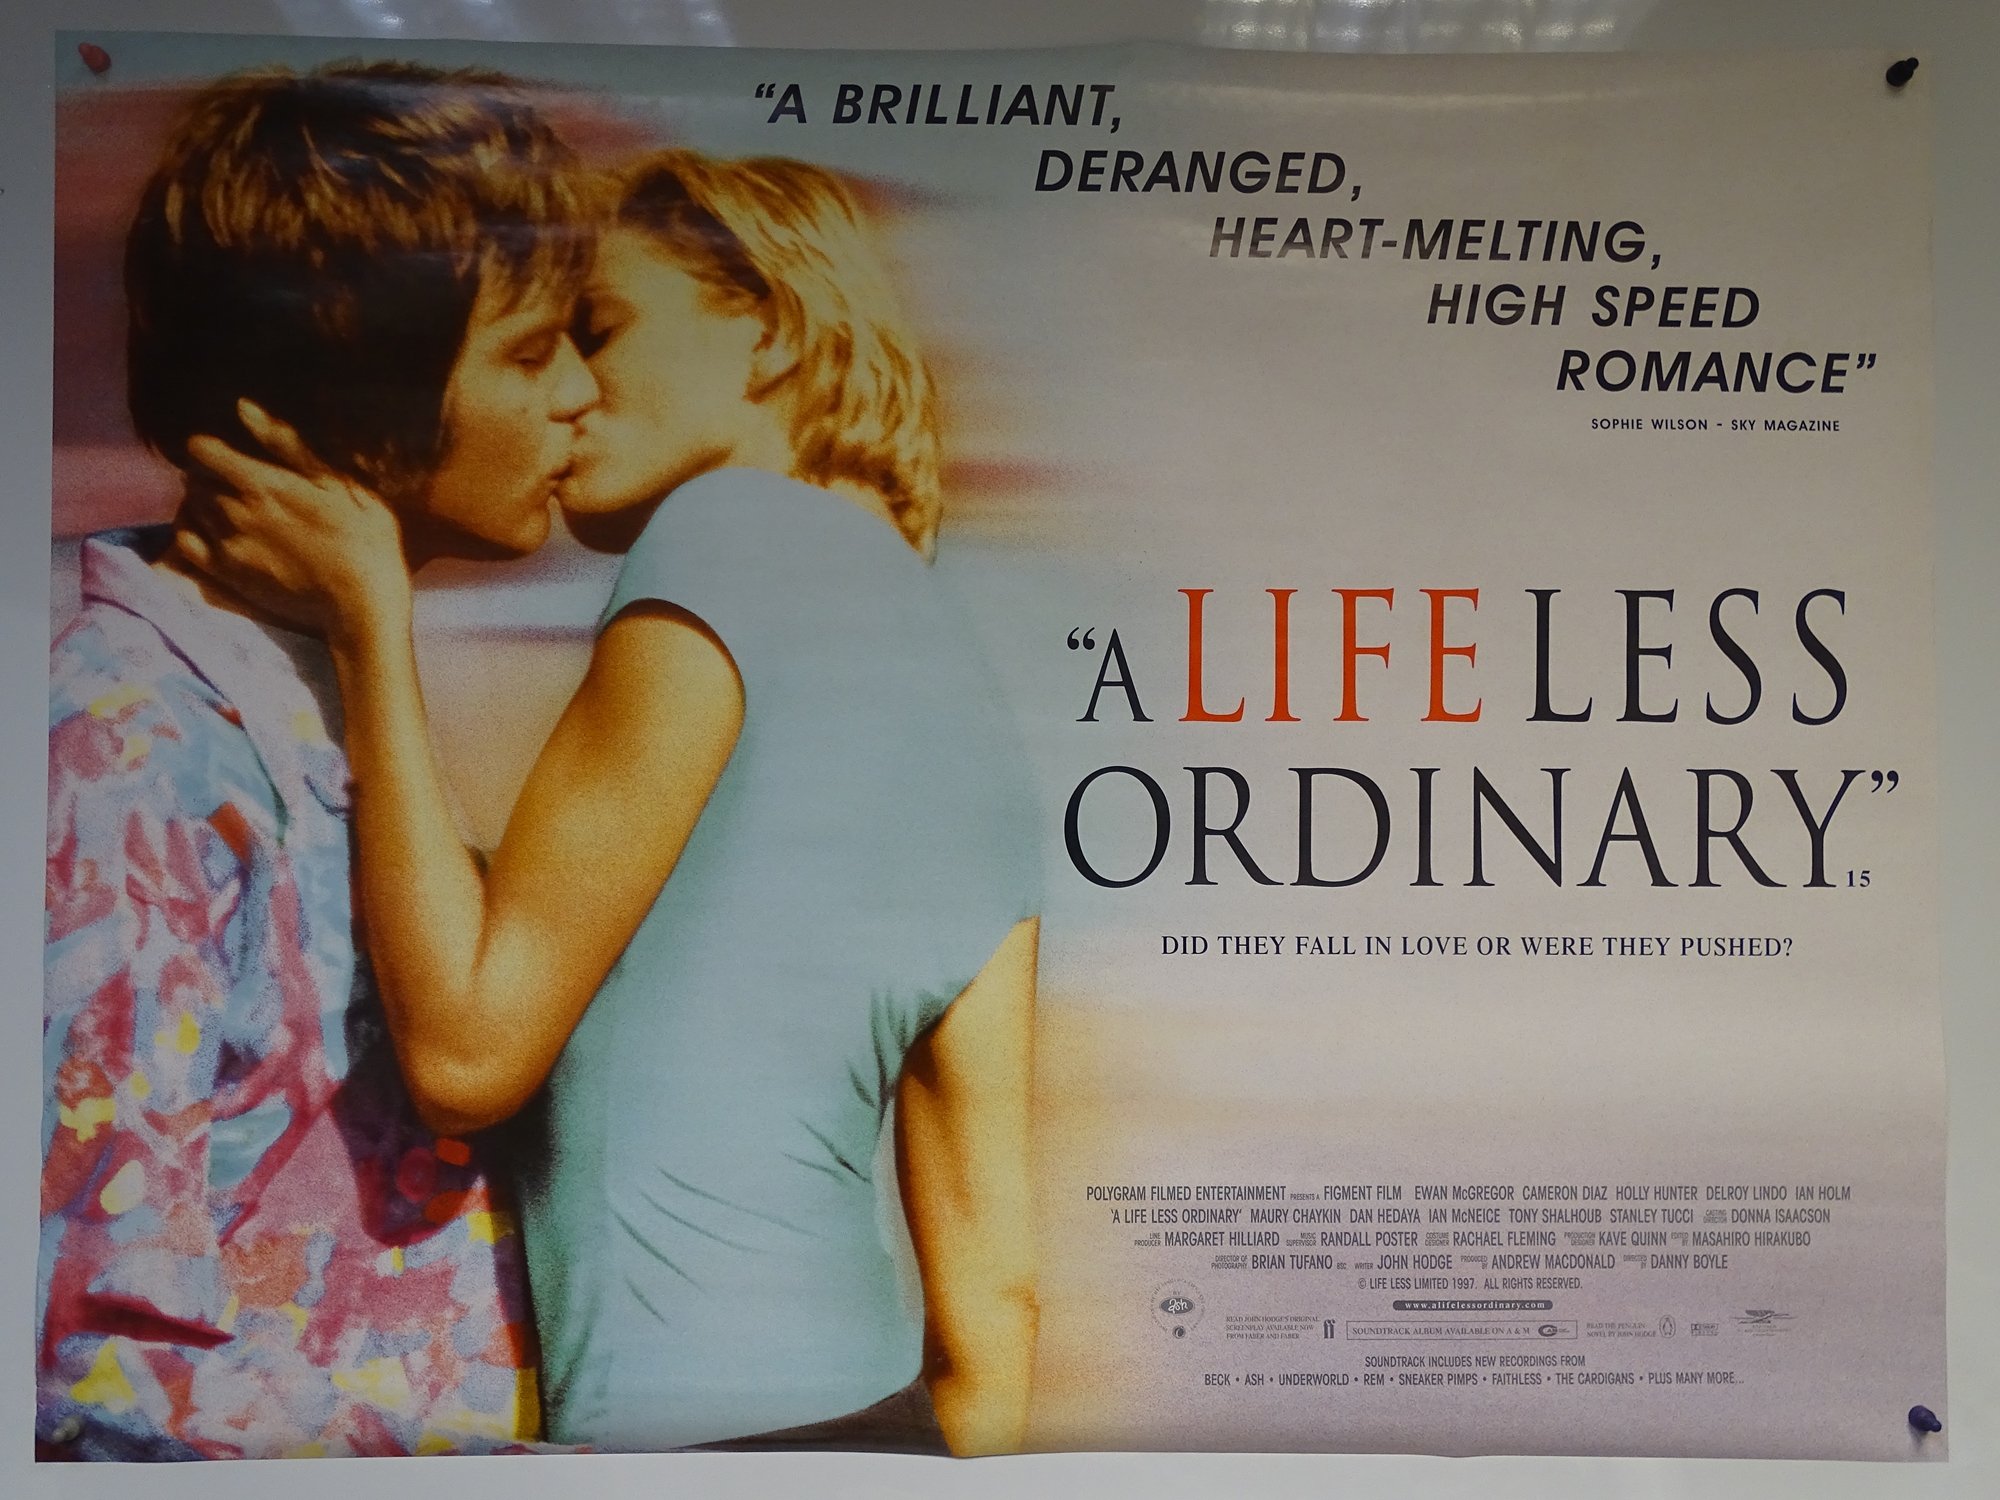 A LIFE LESS ORDINARY (1997) - COMEDY / CRIME / FANTASY - EWAN MCGREGOR / CAMERON DIAZ - DIRECTED